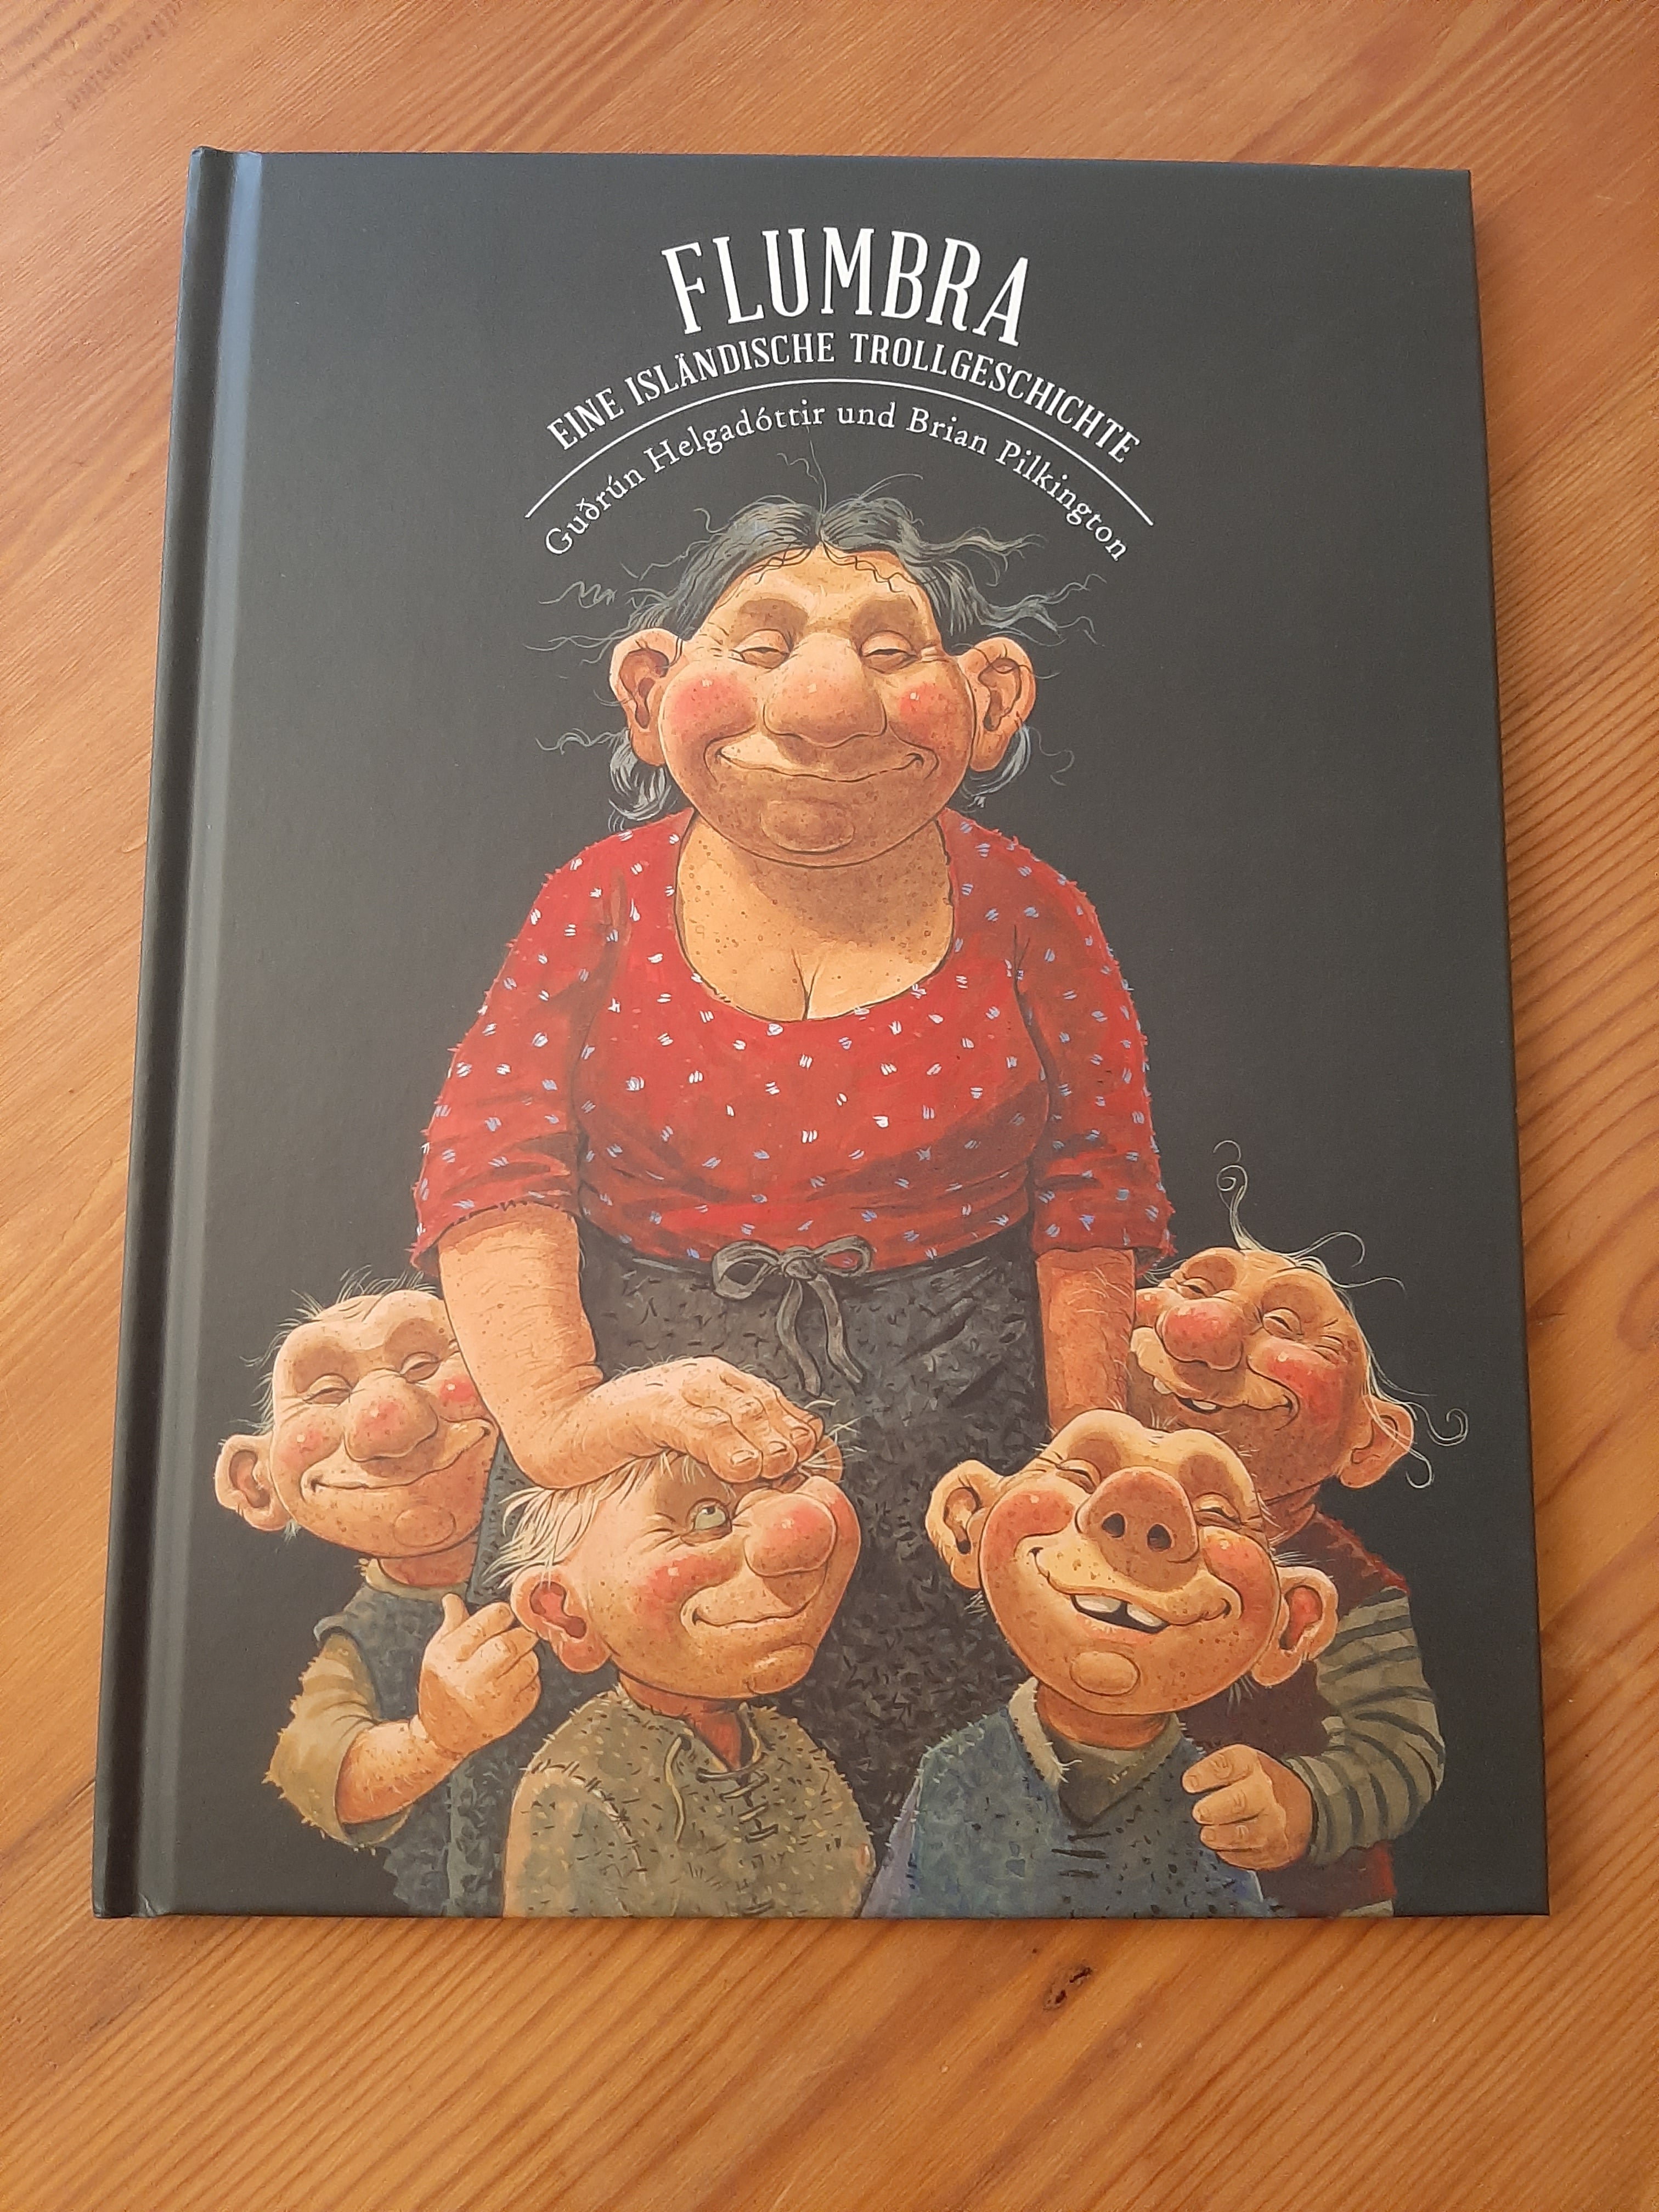 Flumbra - eine isländische trollgeschichte